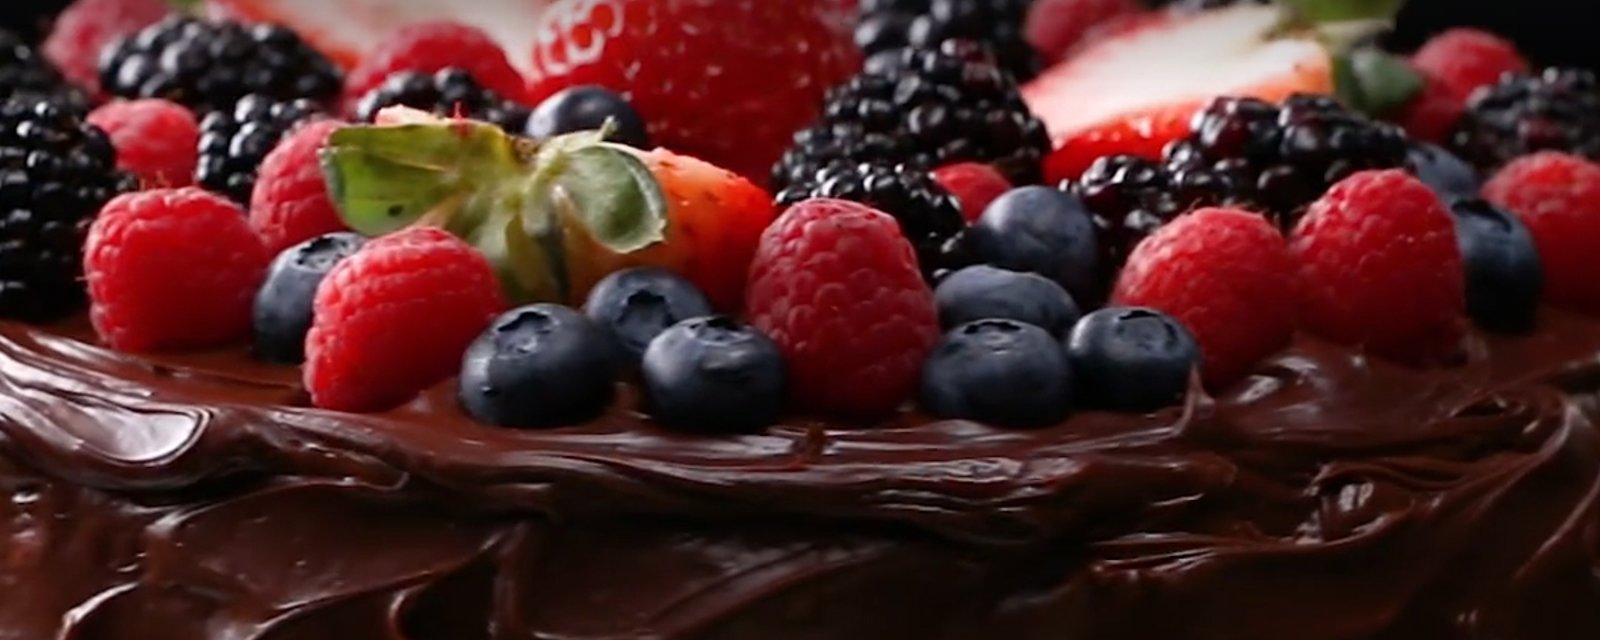 Gâteau au chocolat 100% végan, sans produits laitiers, ni oeufs